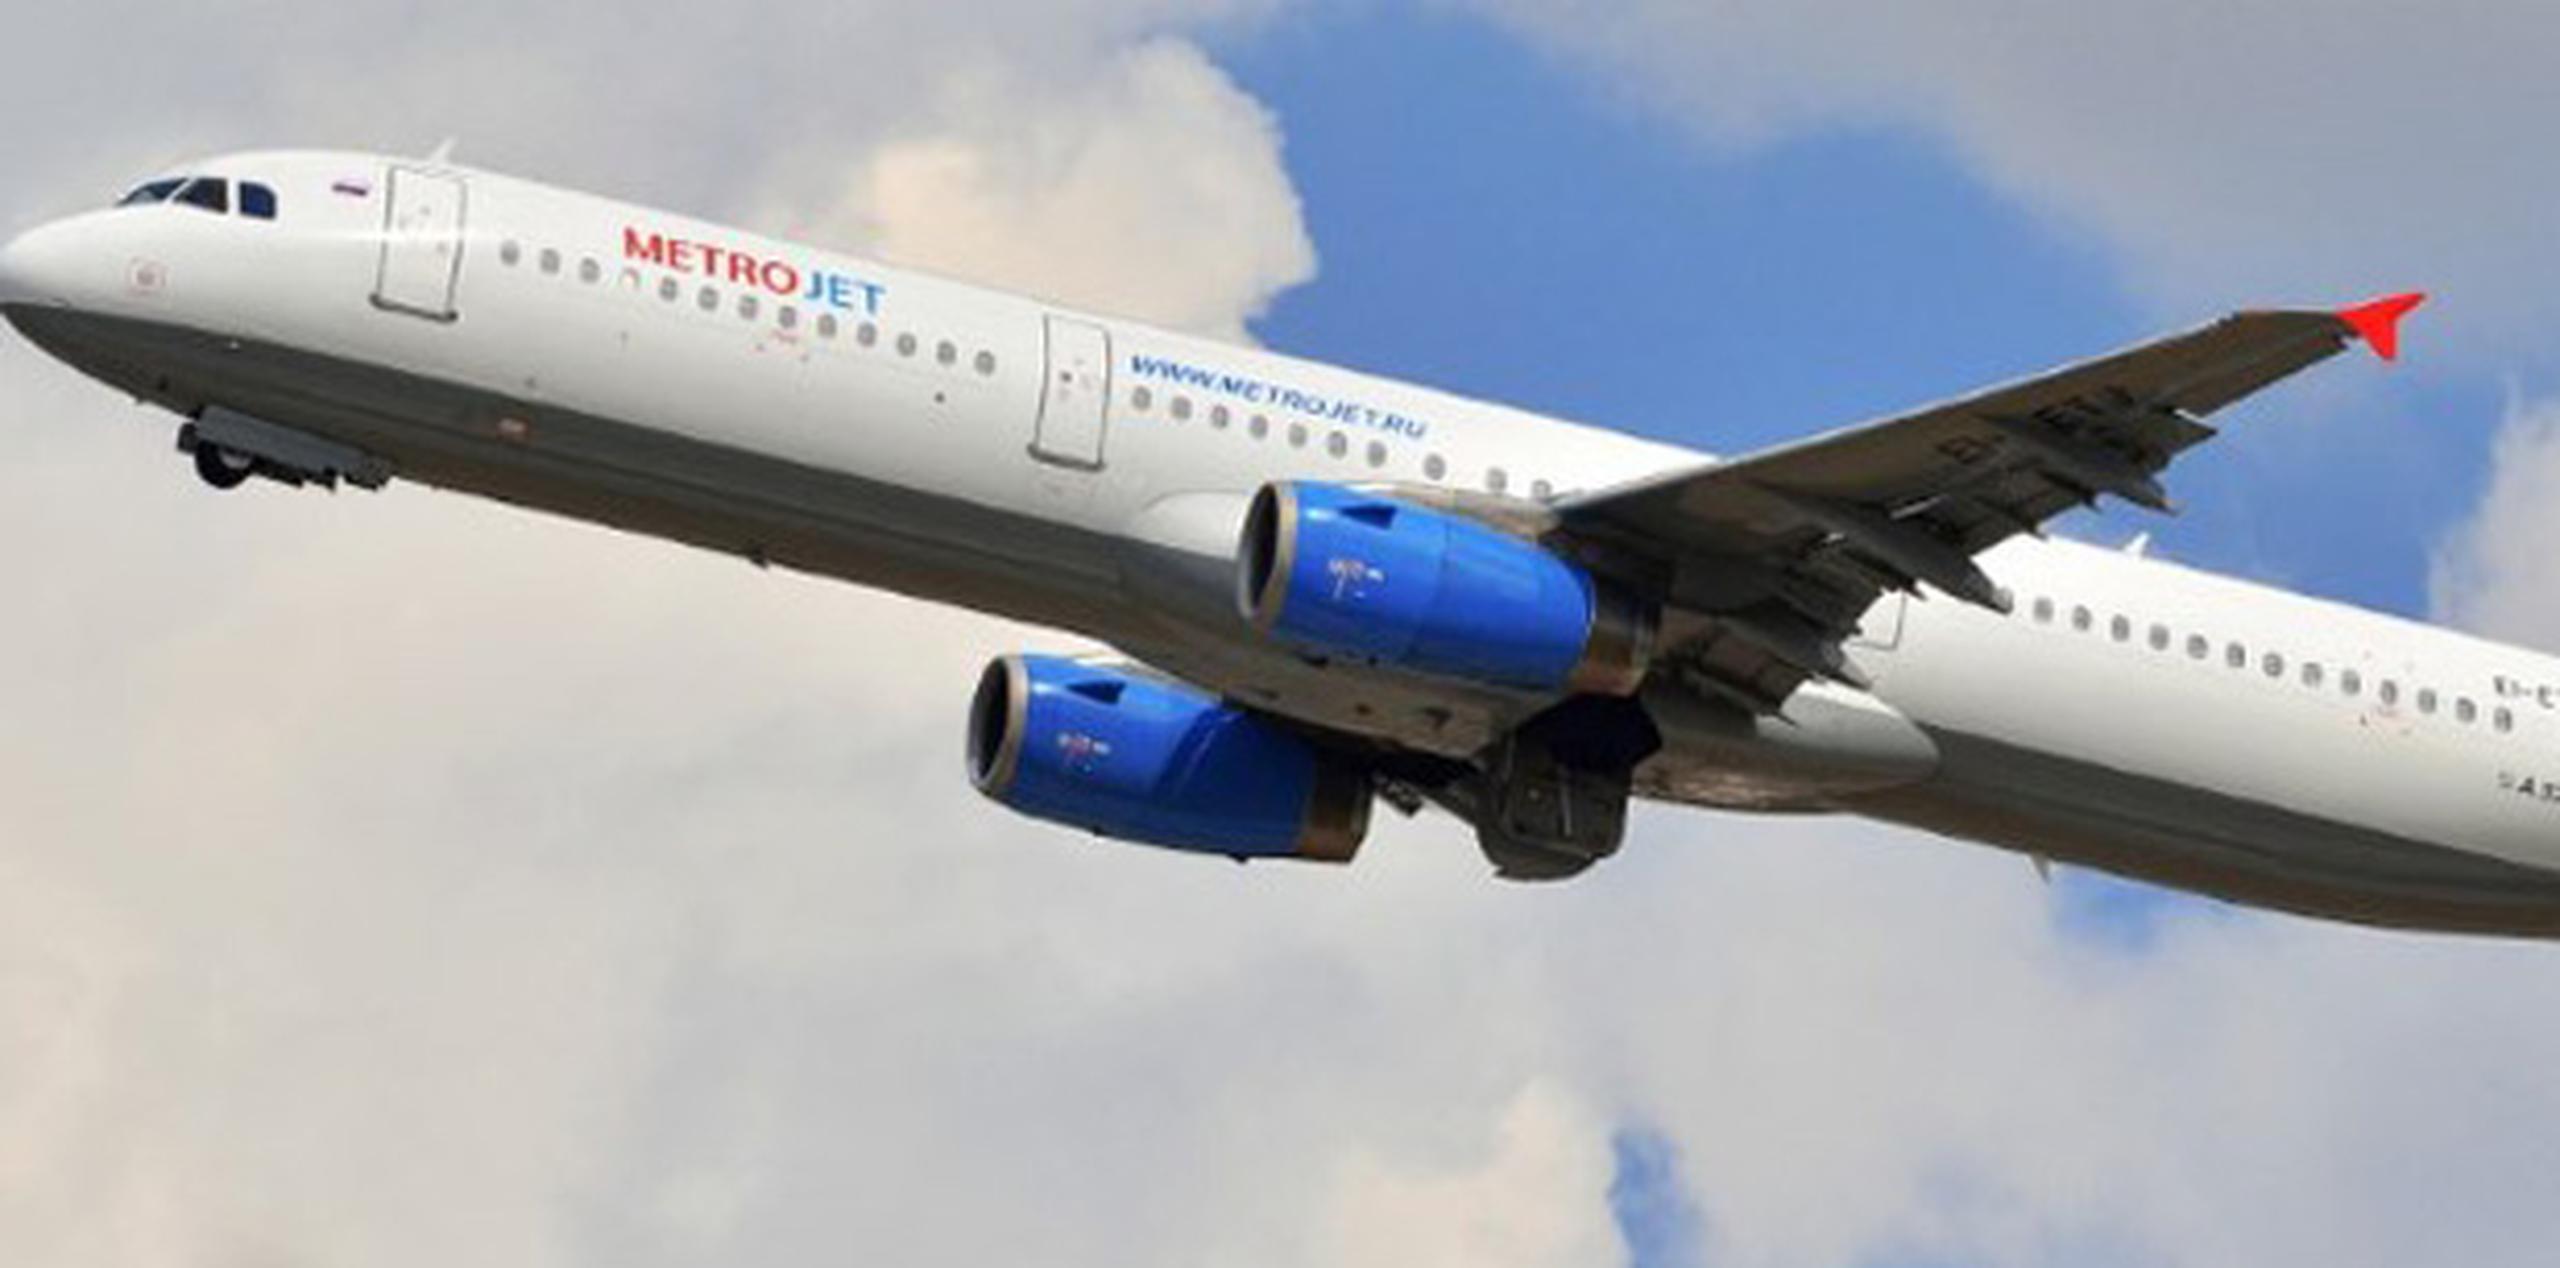 El Airbus A-321 de la compañía rusa MetroJet (Kogalymavia), que cubría la ruta entre la ciudad egipcia de Sharm el Sheij y San Petersburgo, se estrelló el pasado sábado causando la muerte a las 224 personas que viajaban a bordo.